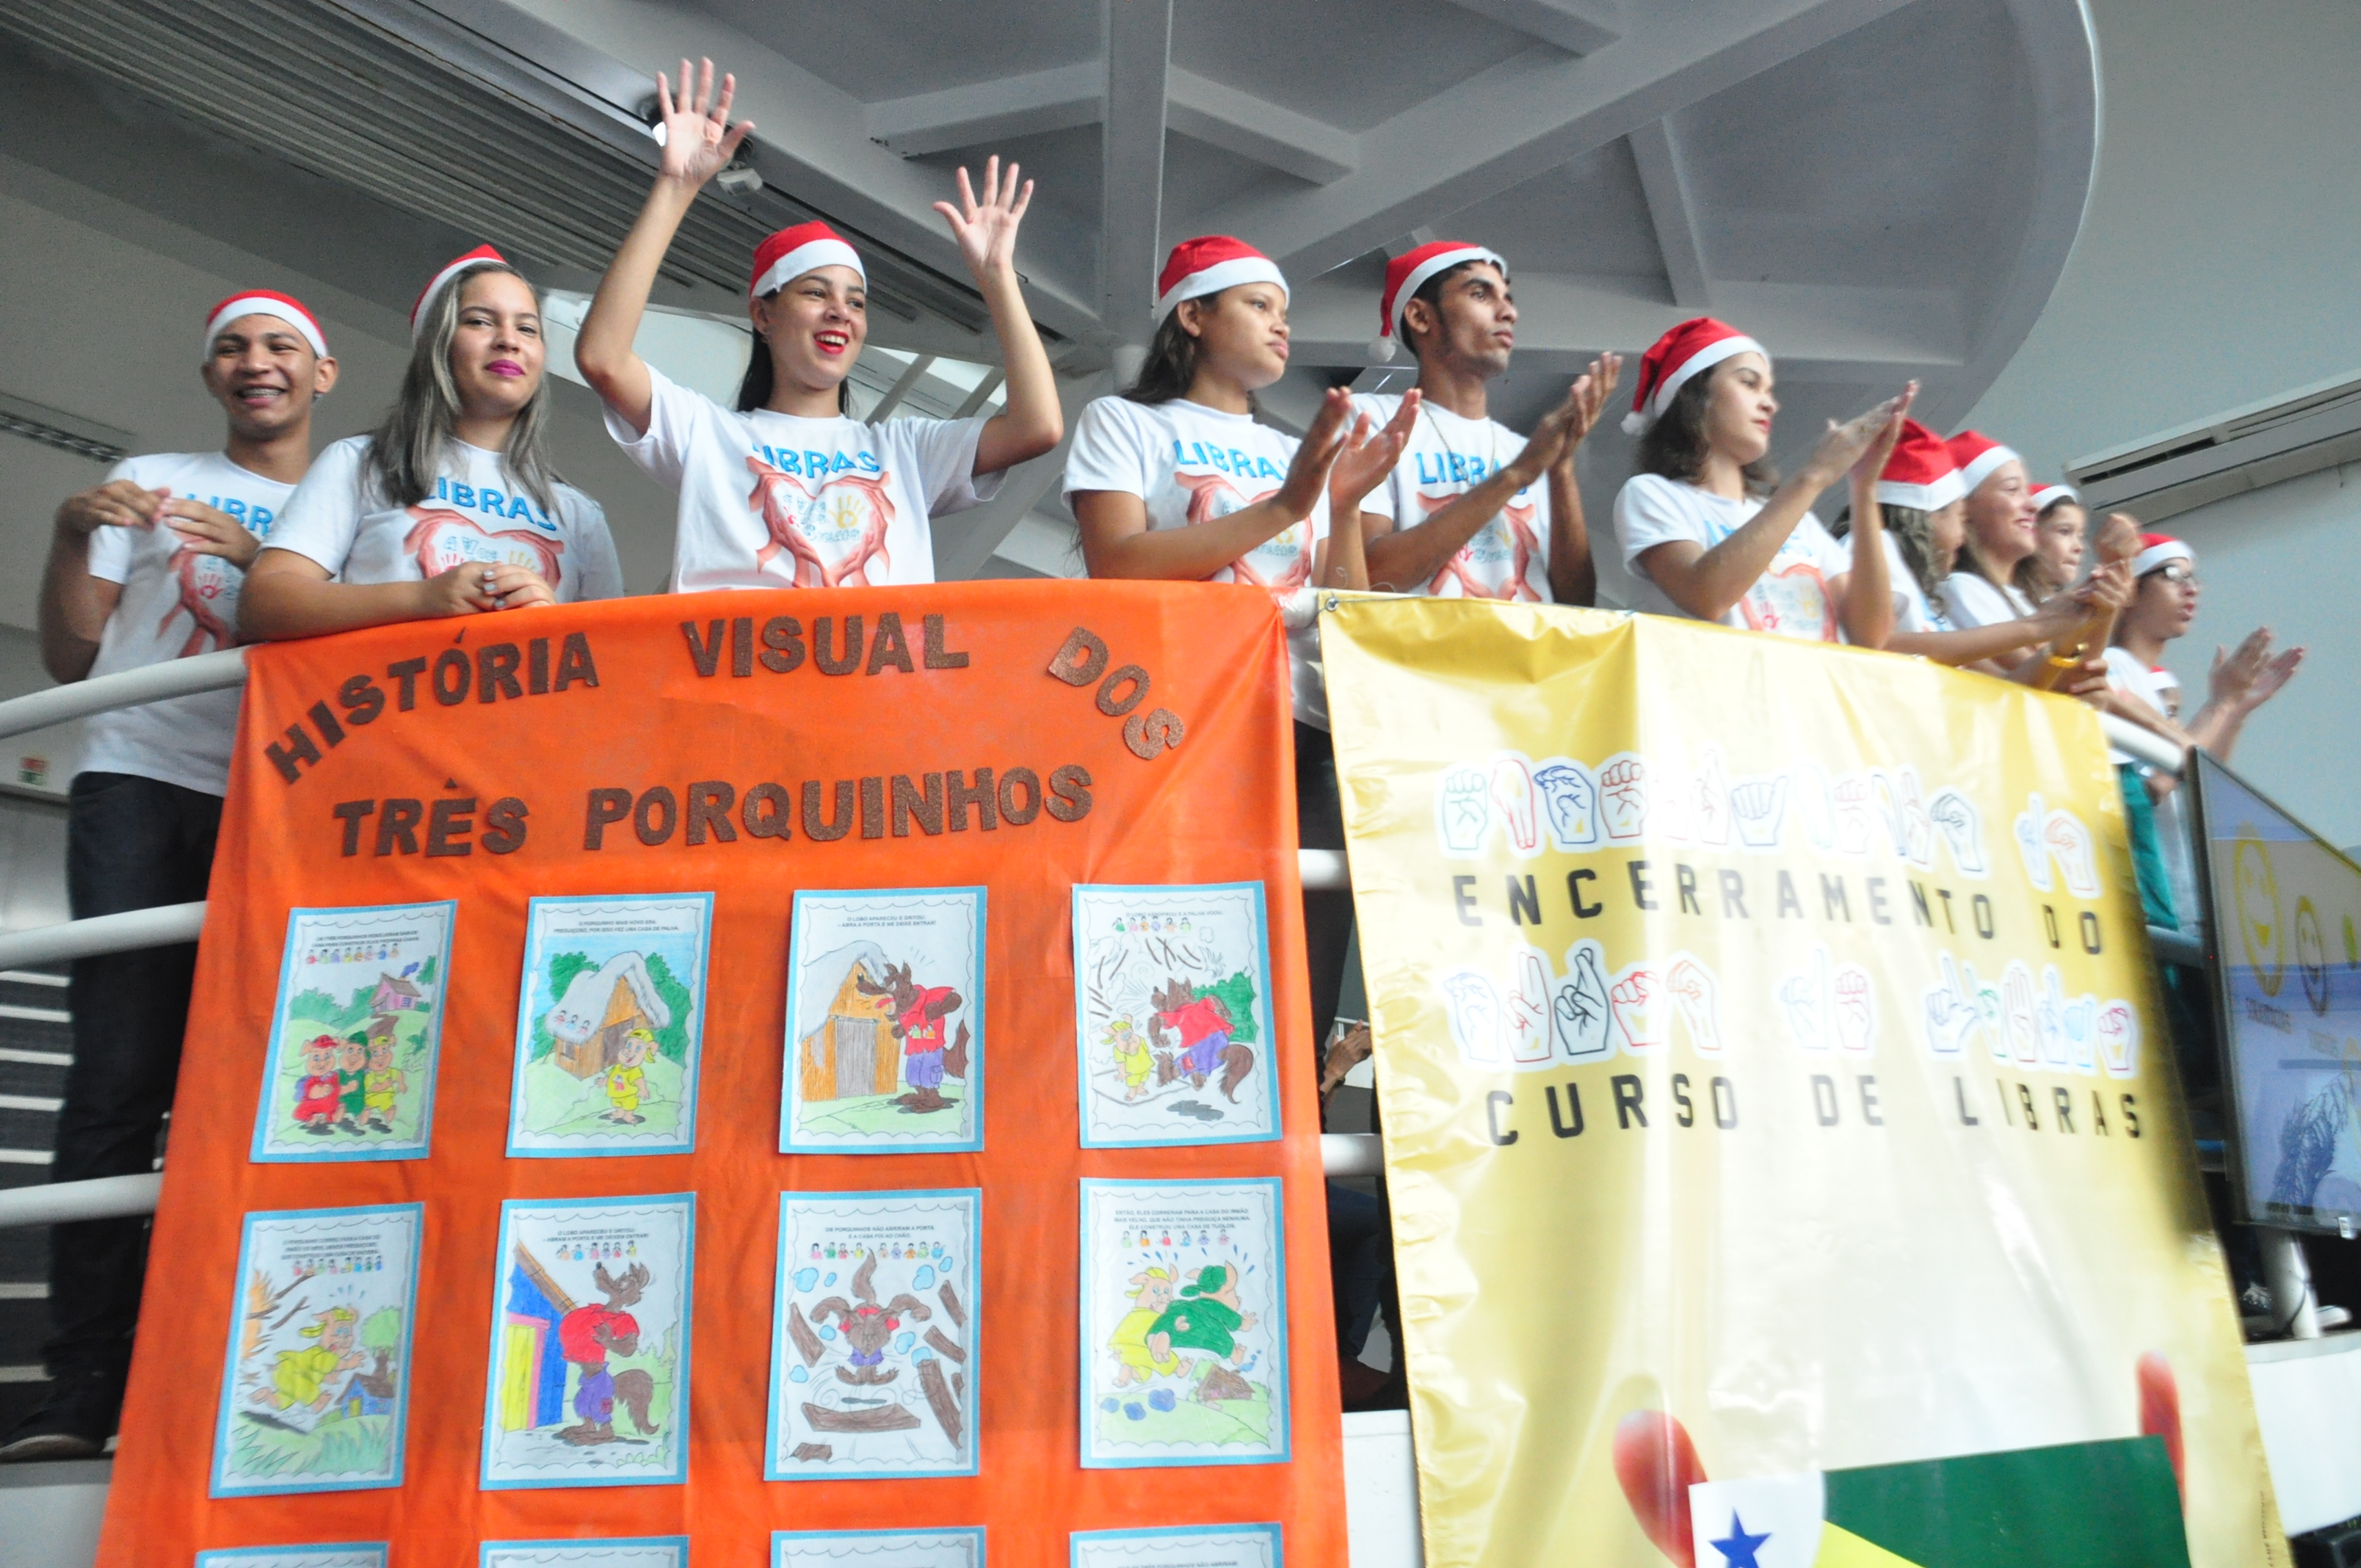  Encerramento do curso de Libras é marcado por exposição de Jogos Pedagógicos na Prefeitura